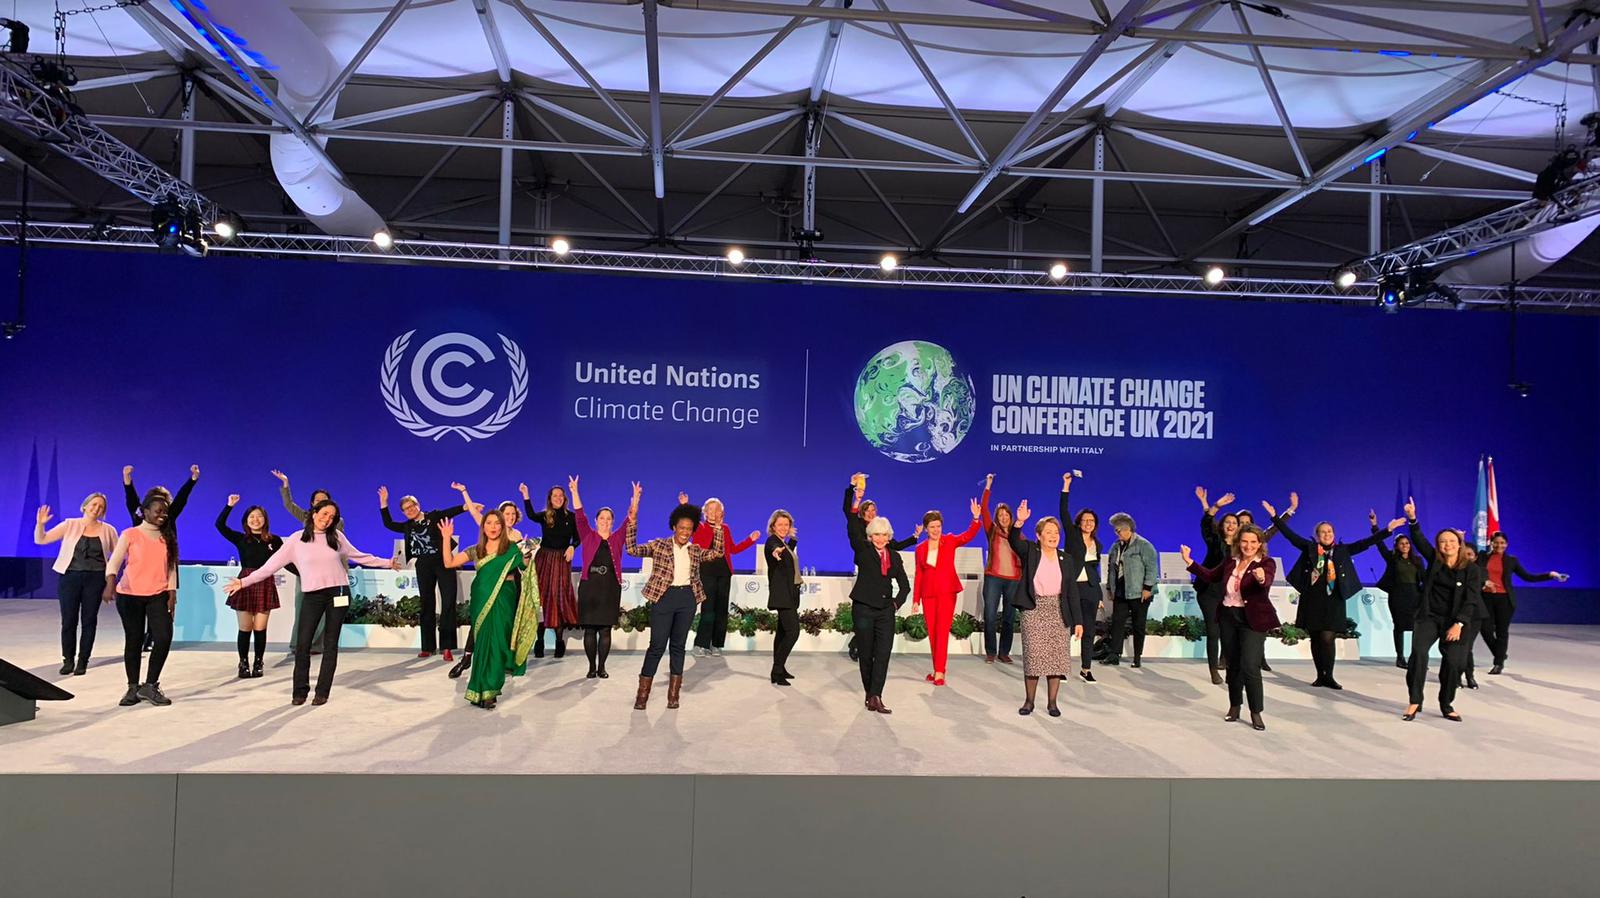 Las mujeres, líderes en acción climática en la COP26